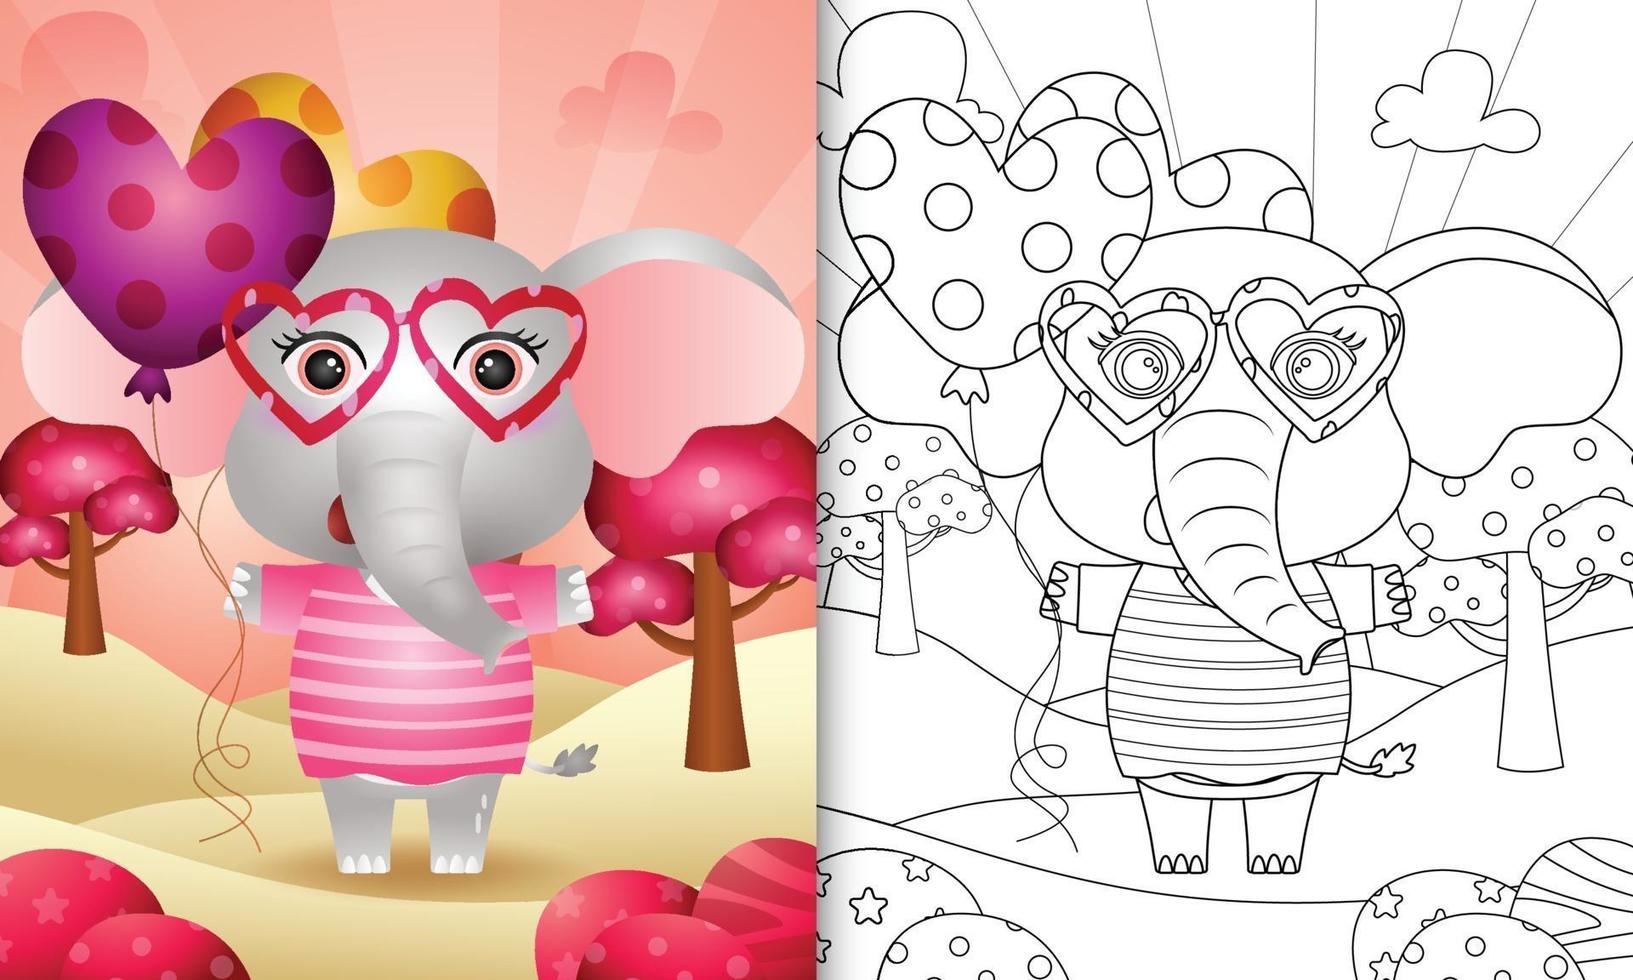 kleurboek voor kinderen met een schattige olifant met ballon voor Valentijnsdag vector